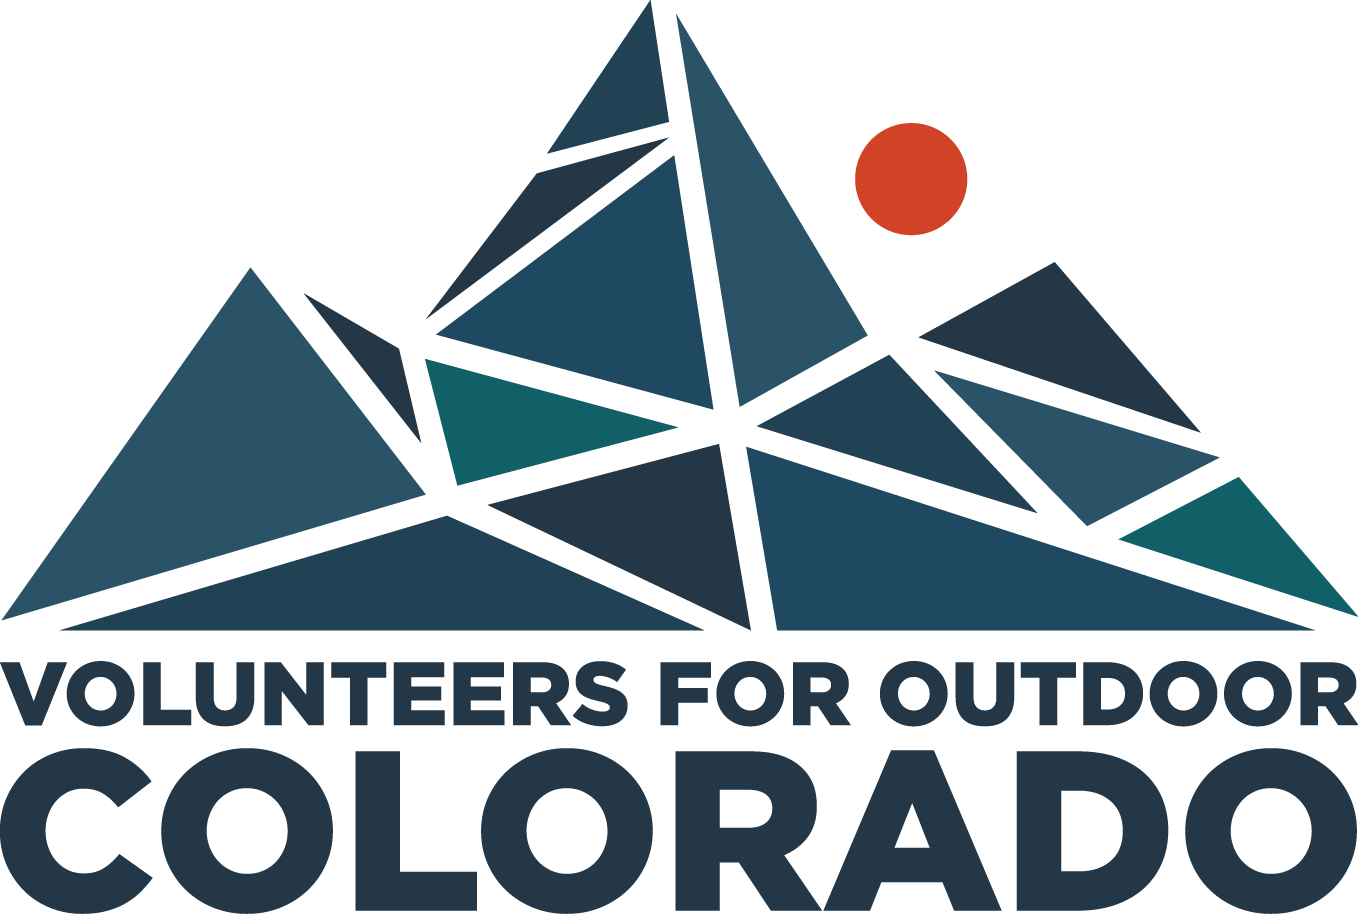 Volunteers For Outdoor Colorado logo